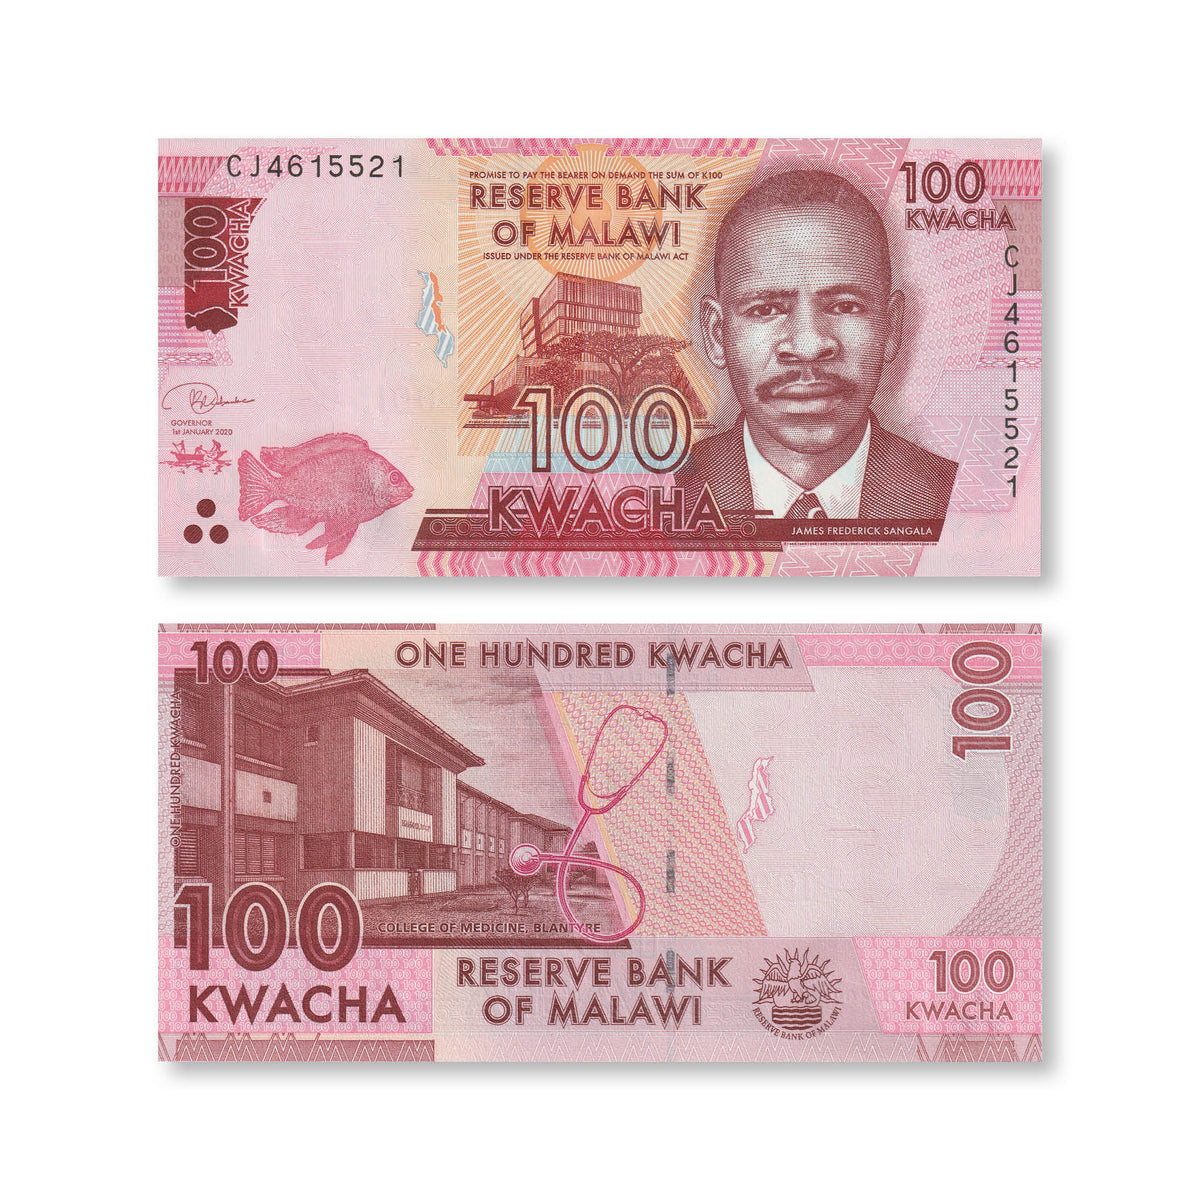 Malawi 100 Kwacha, 2020, B159e, P65, UNC - Robert's World Money - World Banknotes